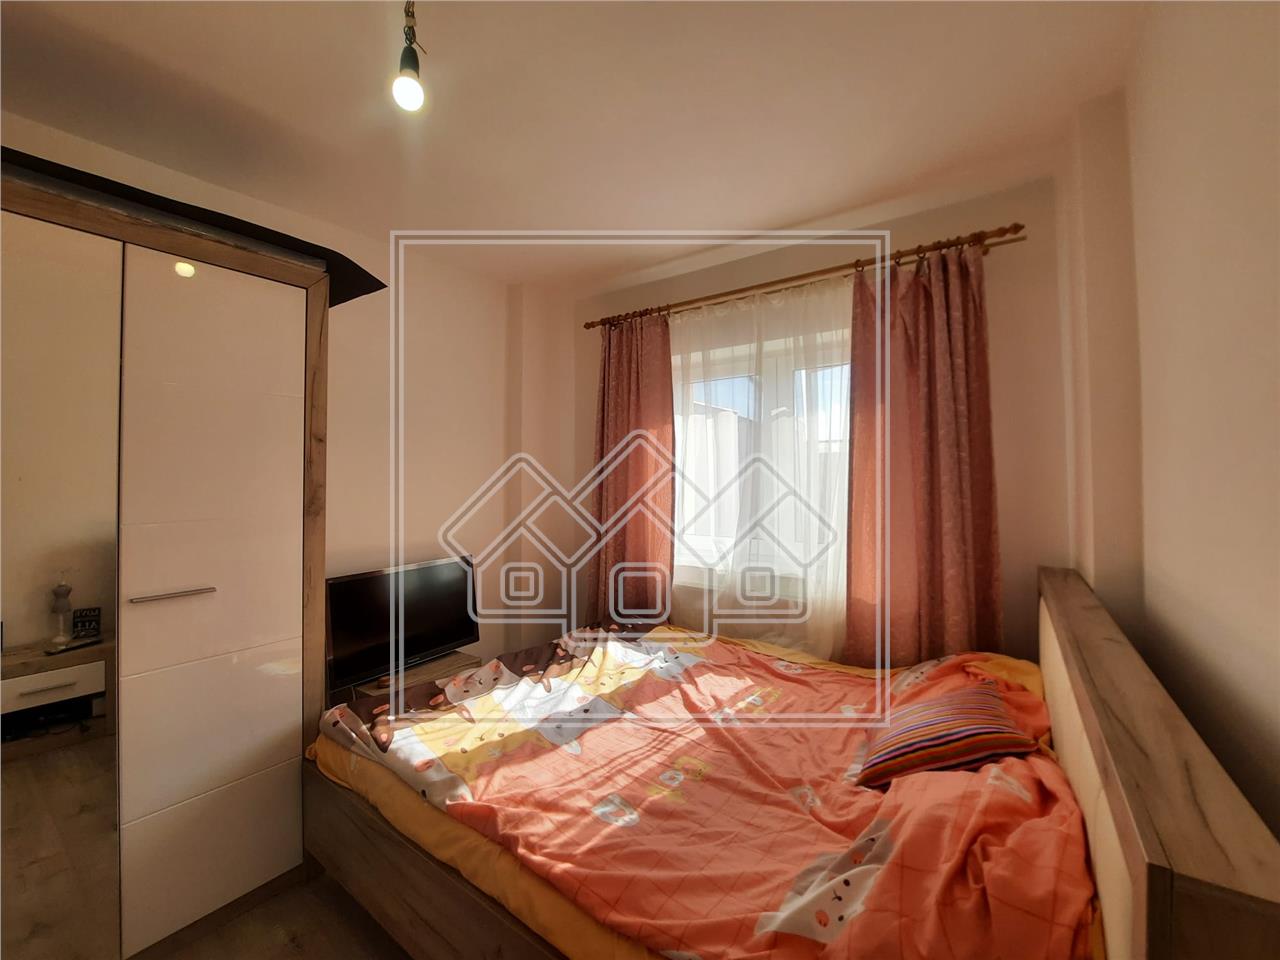 Apartment for sale in Alba Iulia, 3 rooms, parking space, Cetate